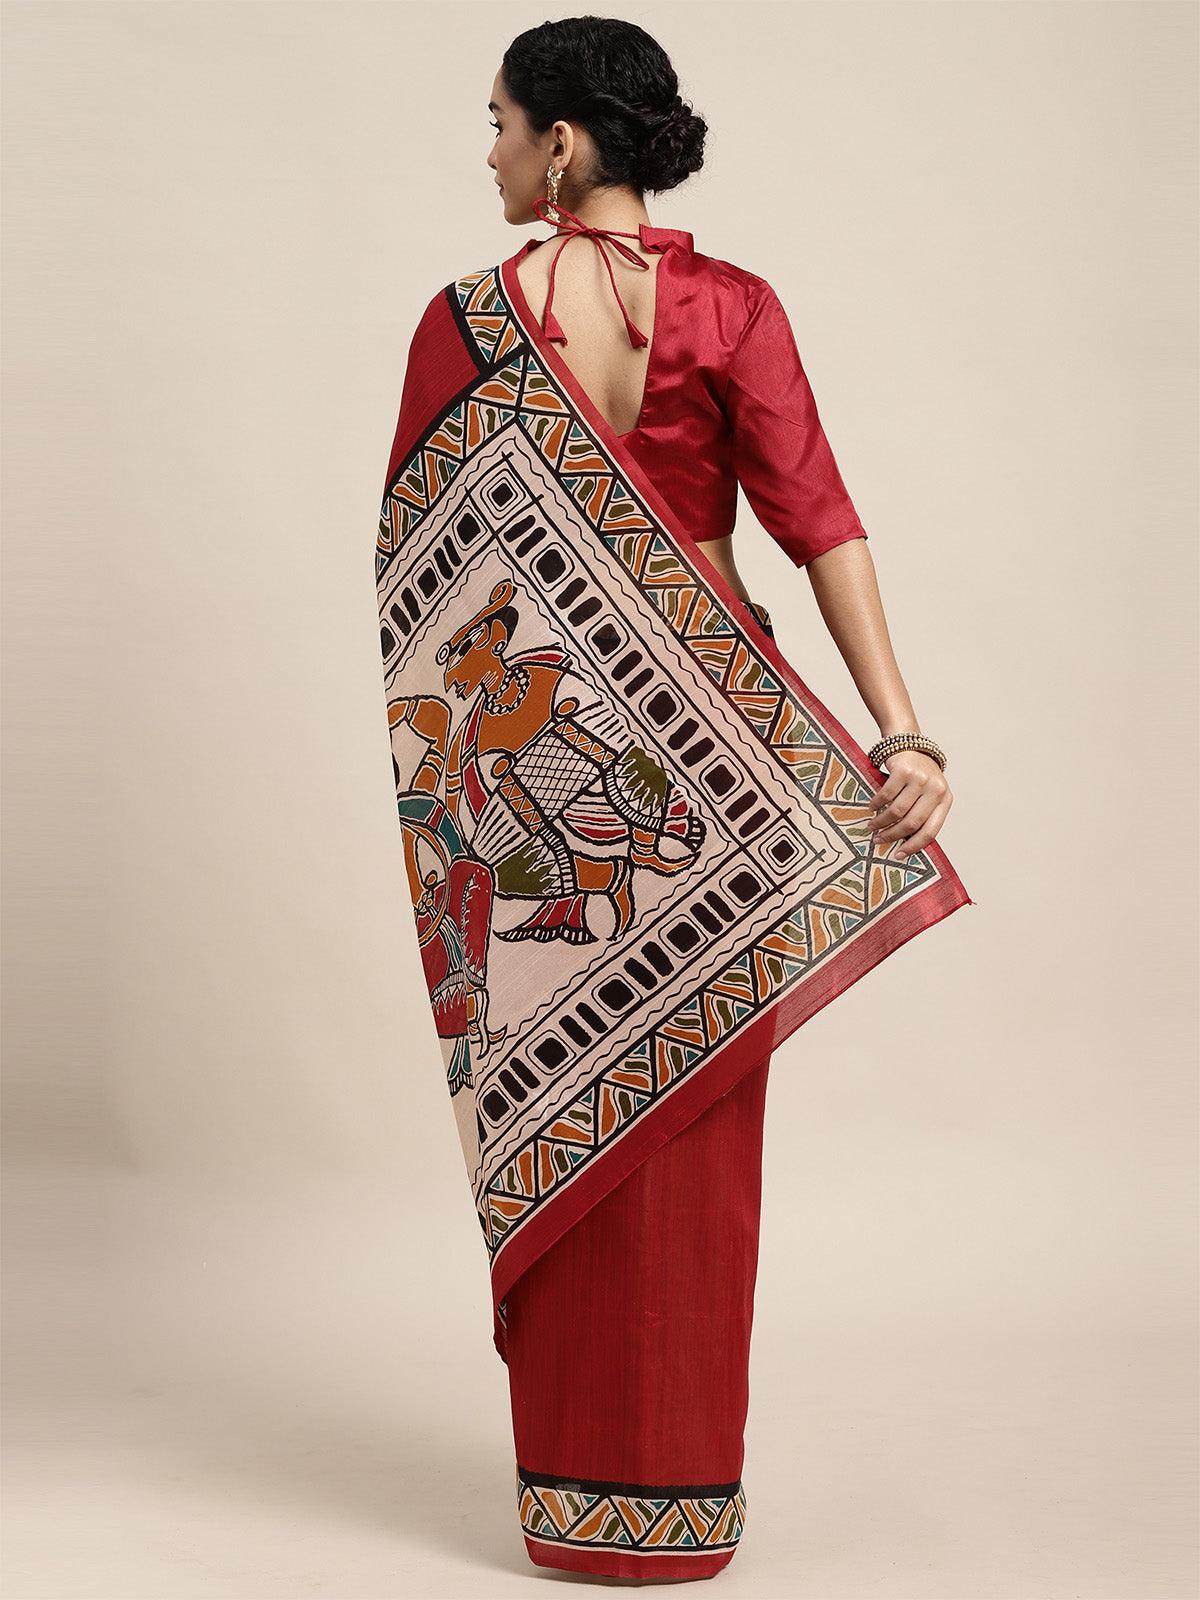 Women's Bhagalpuri Silk Maroon Printed Saree With Blouse Piece - Odette